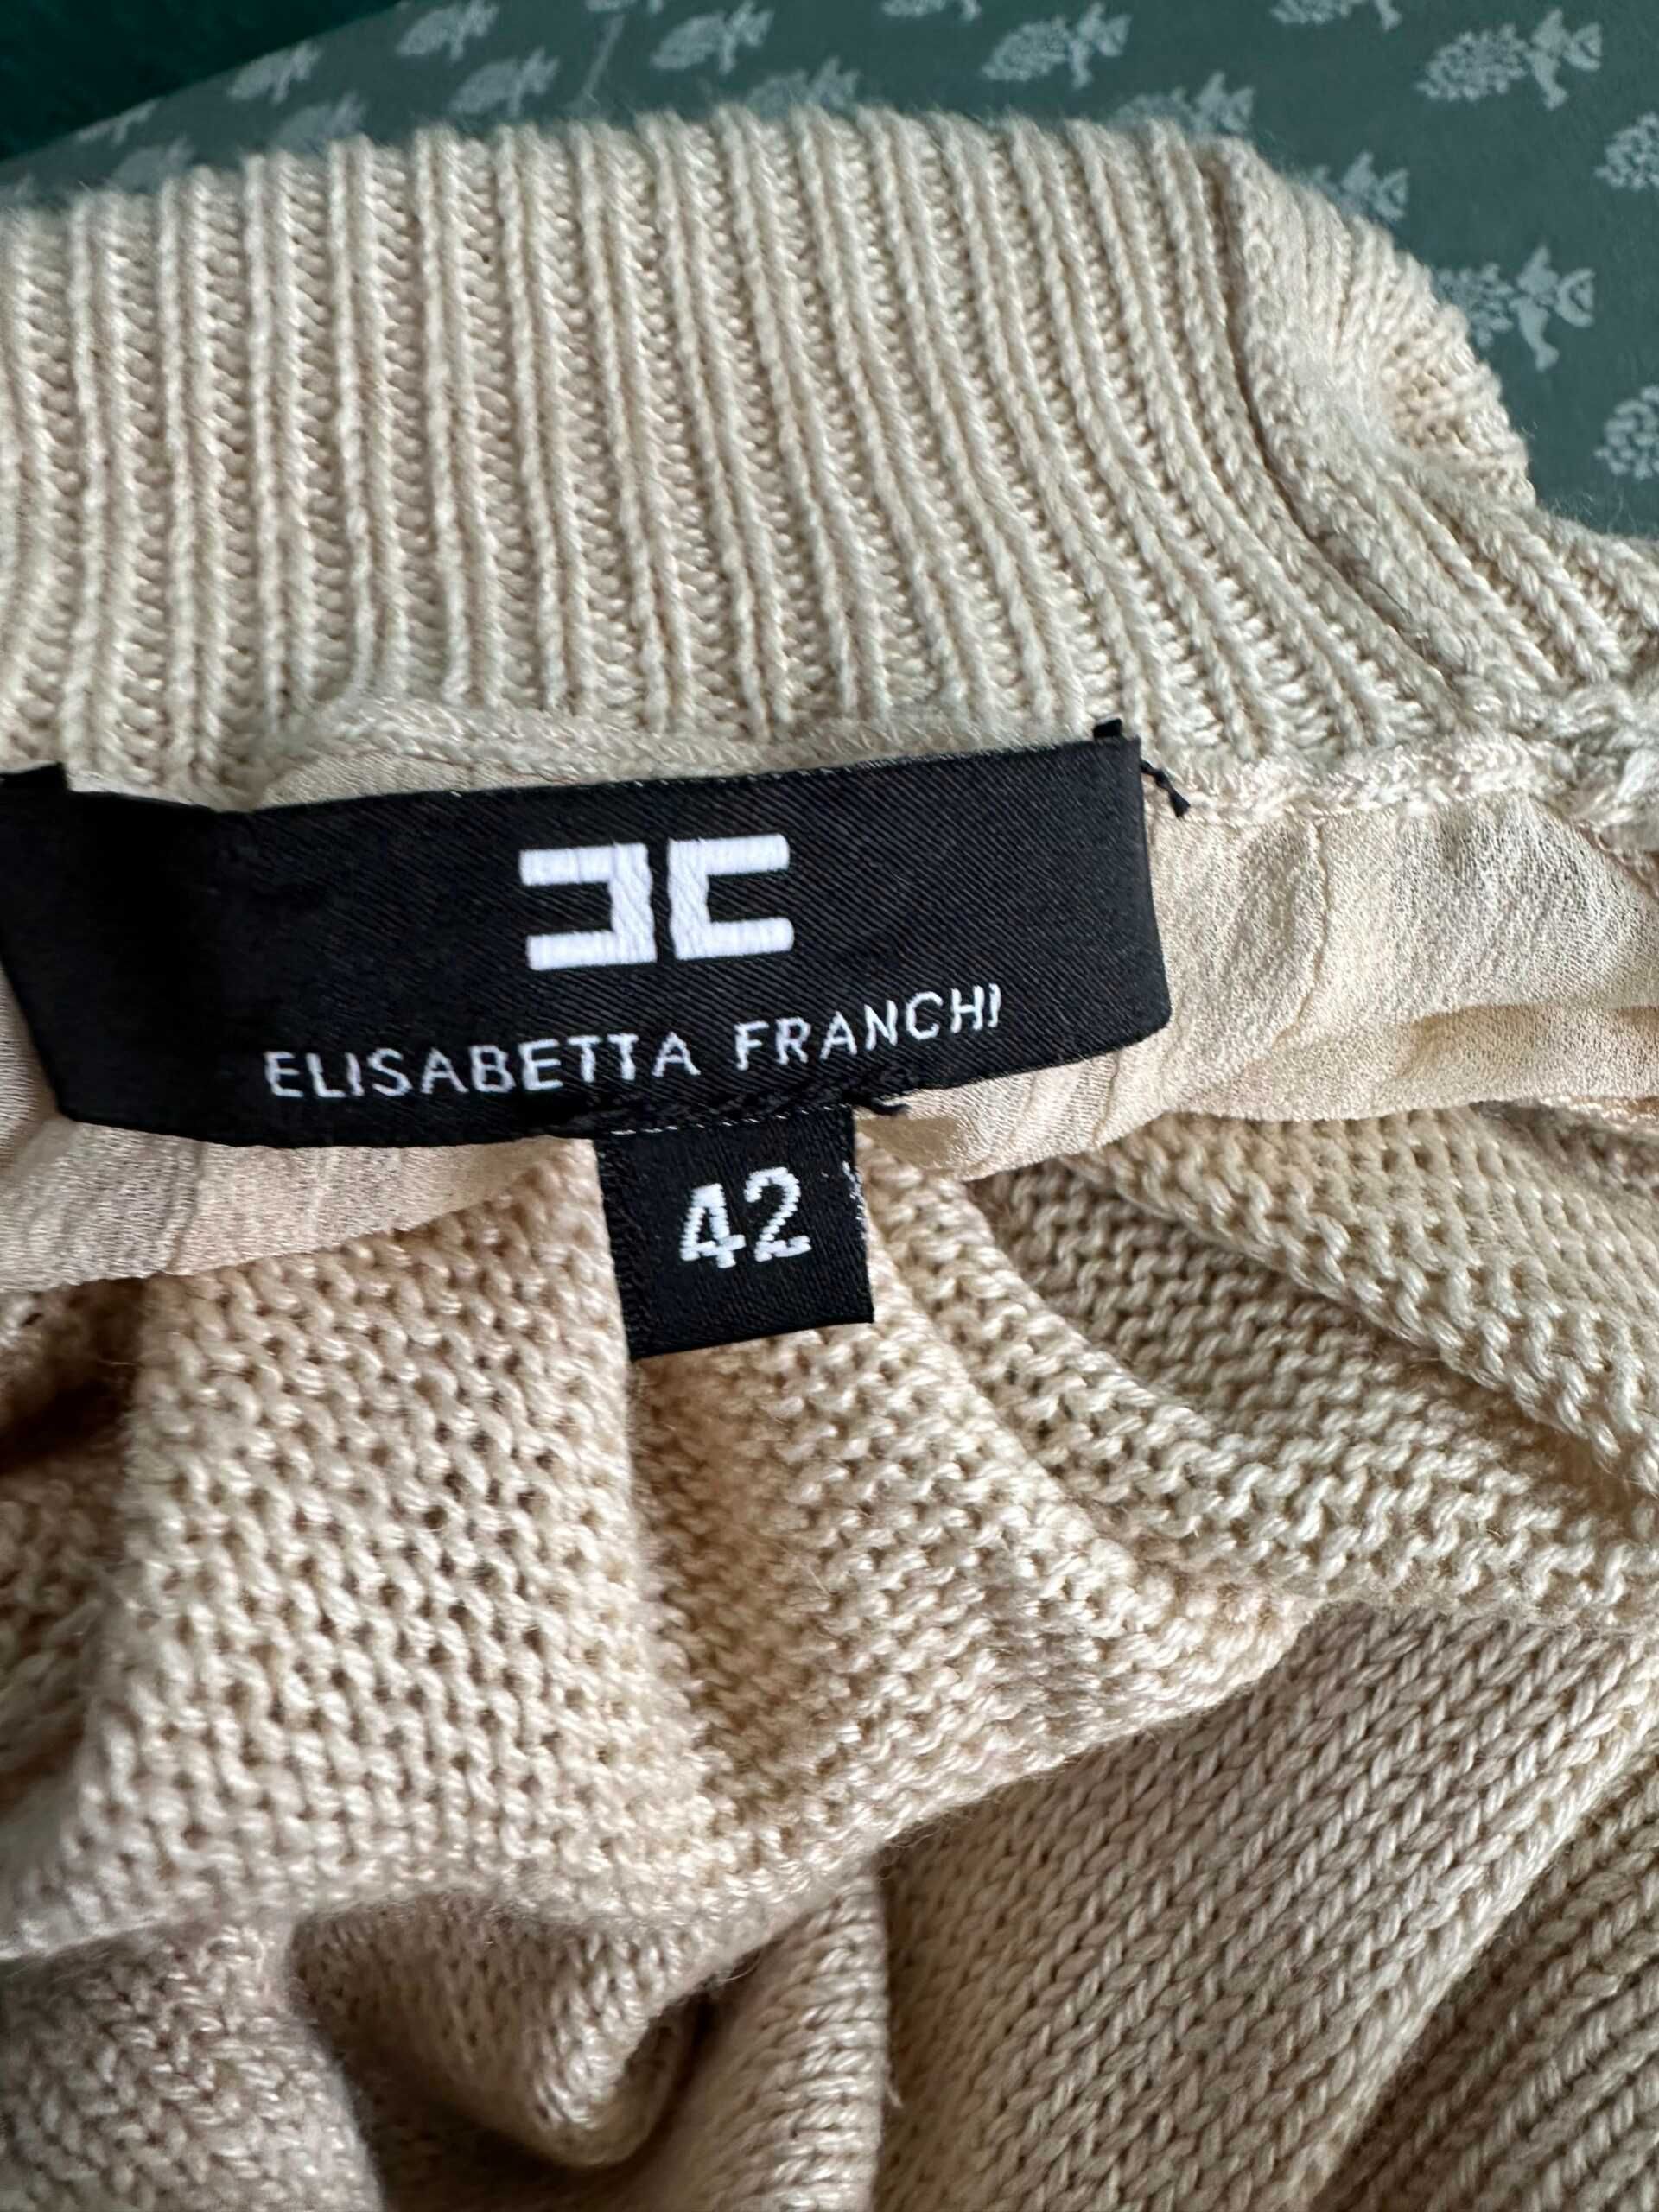 Bluză Elisabetta Franchi, mărimea 42/S, lâniță și tulle transparent